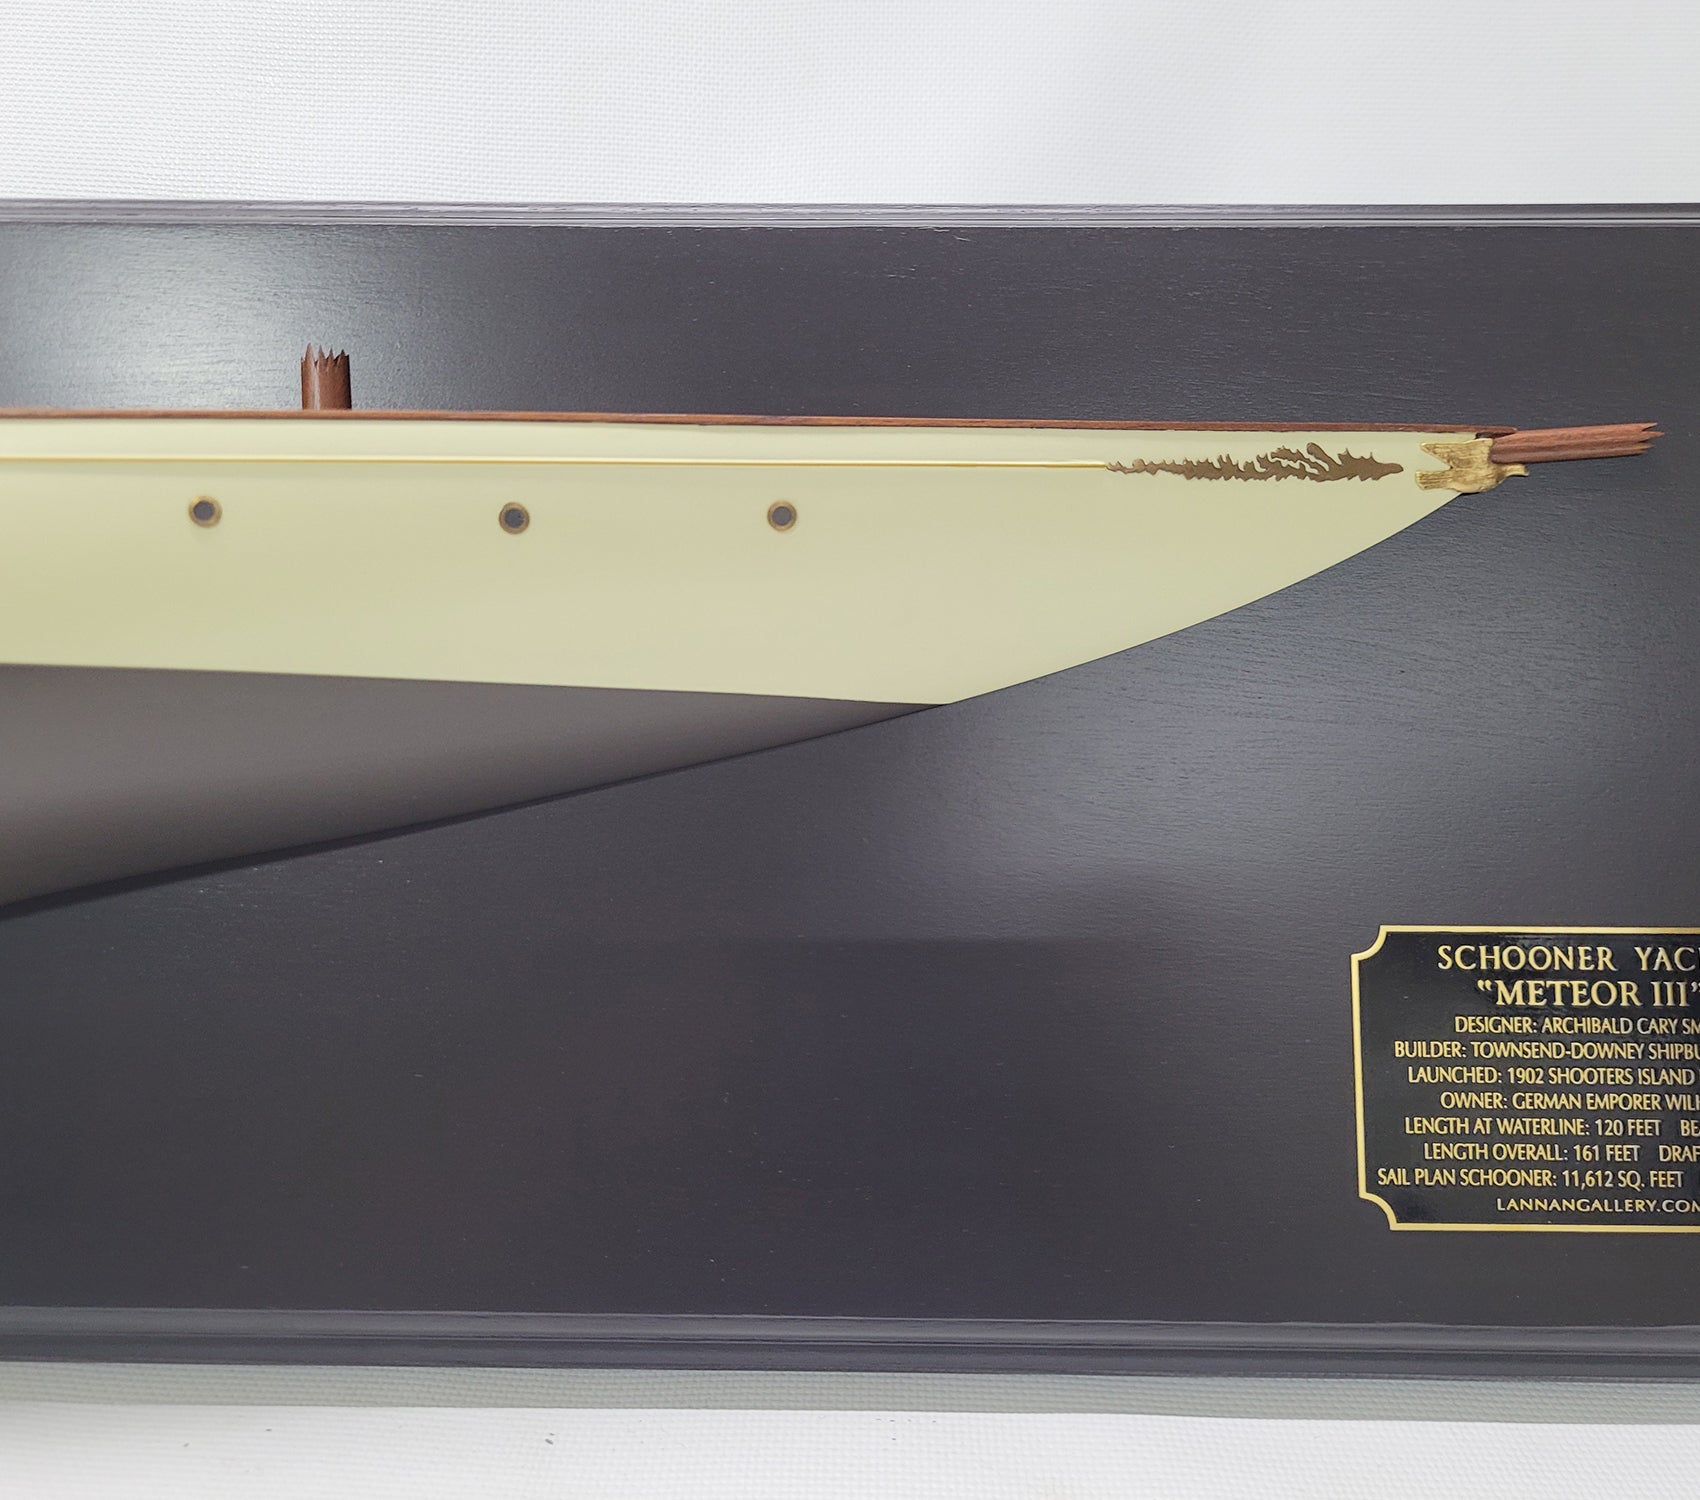 Fine Half Model of the Famous German Schooner Meteor III - Lannan Gallery